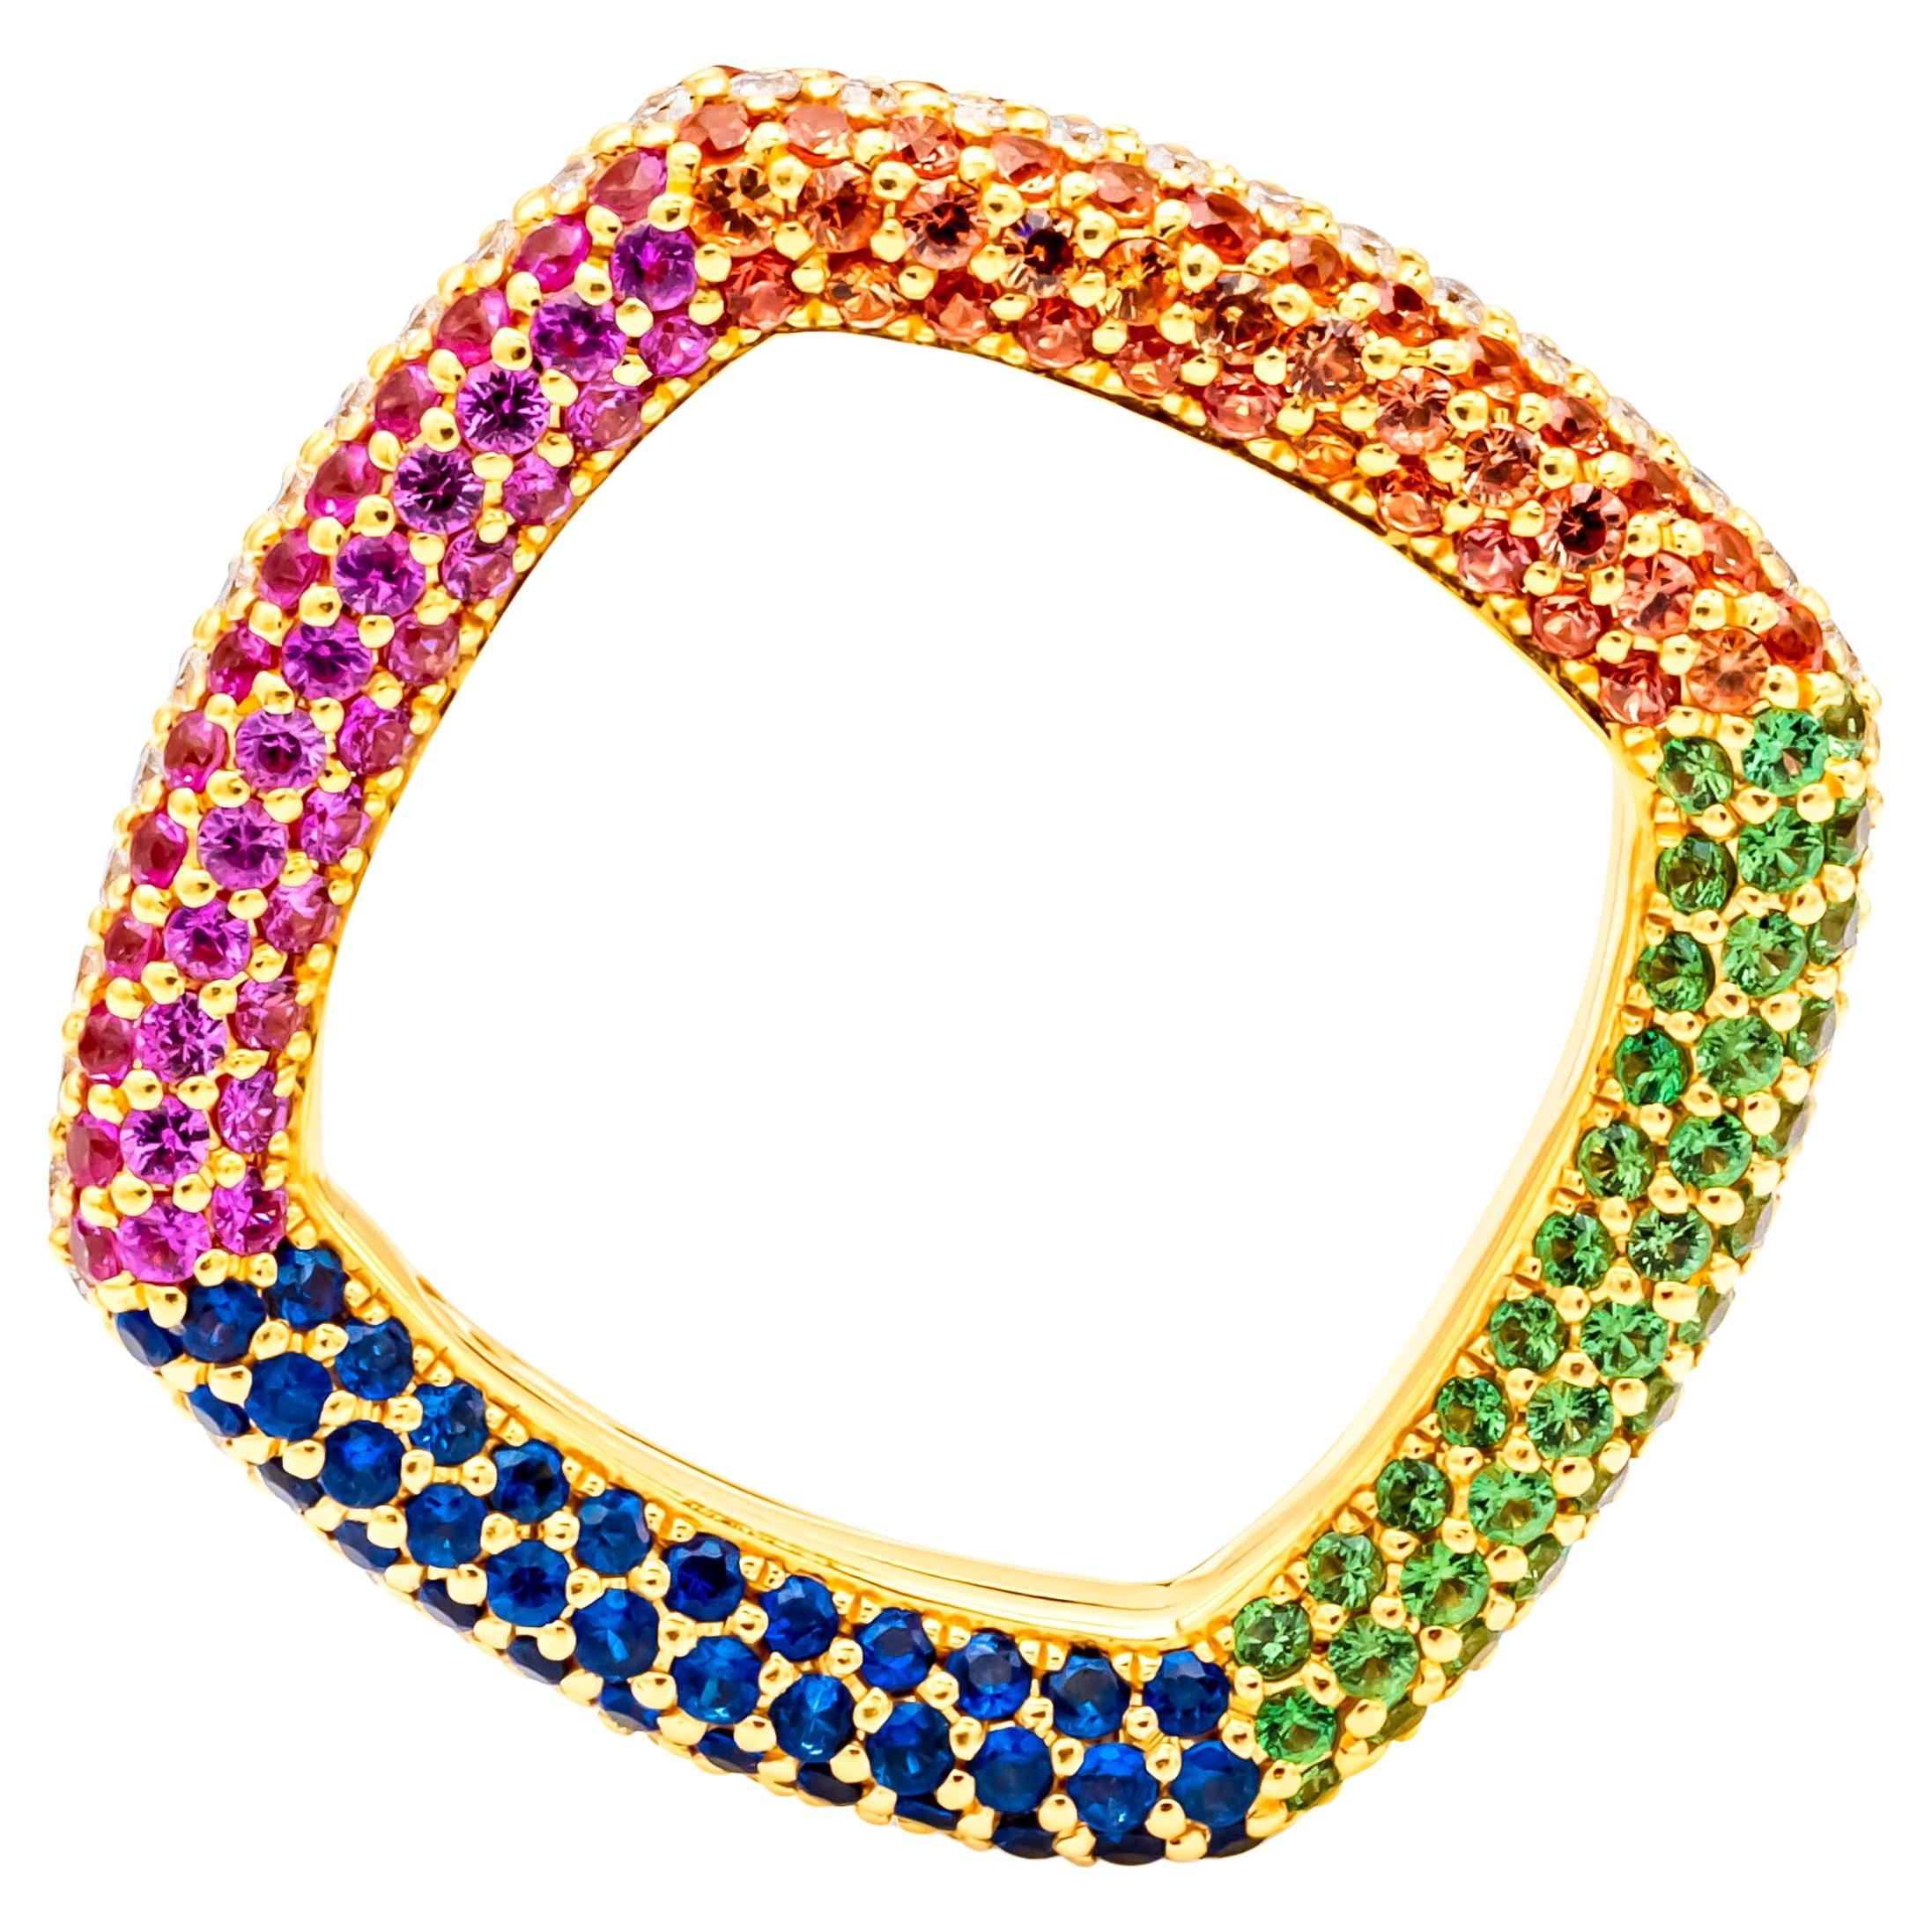 Bague à la mode carrée pavée de diamants ronds et de pierres précieuses multicolores de 3,76 carats au total